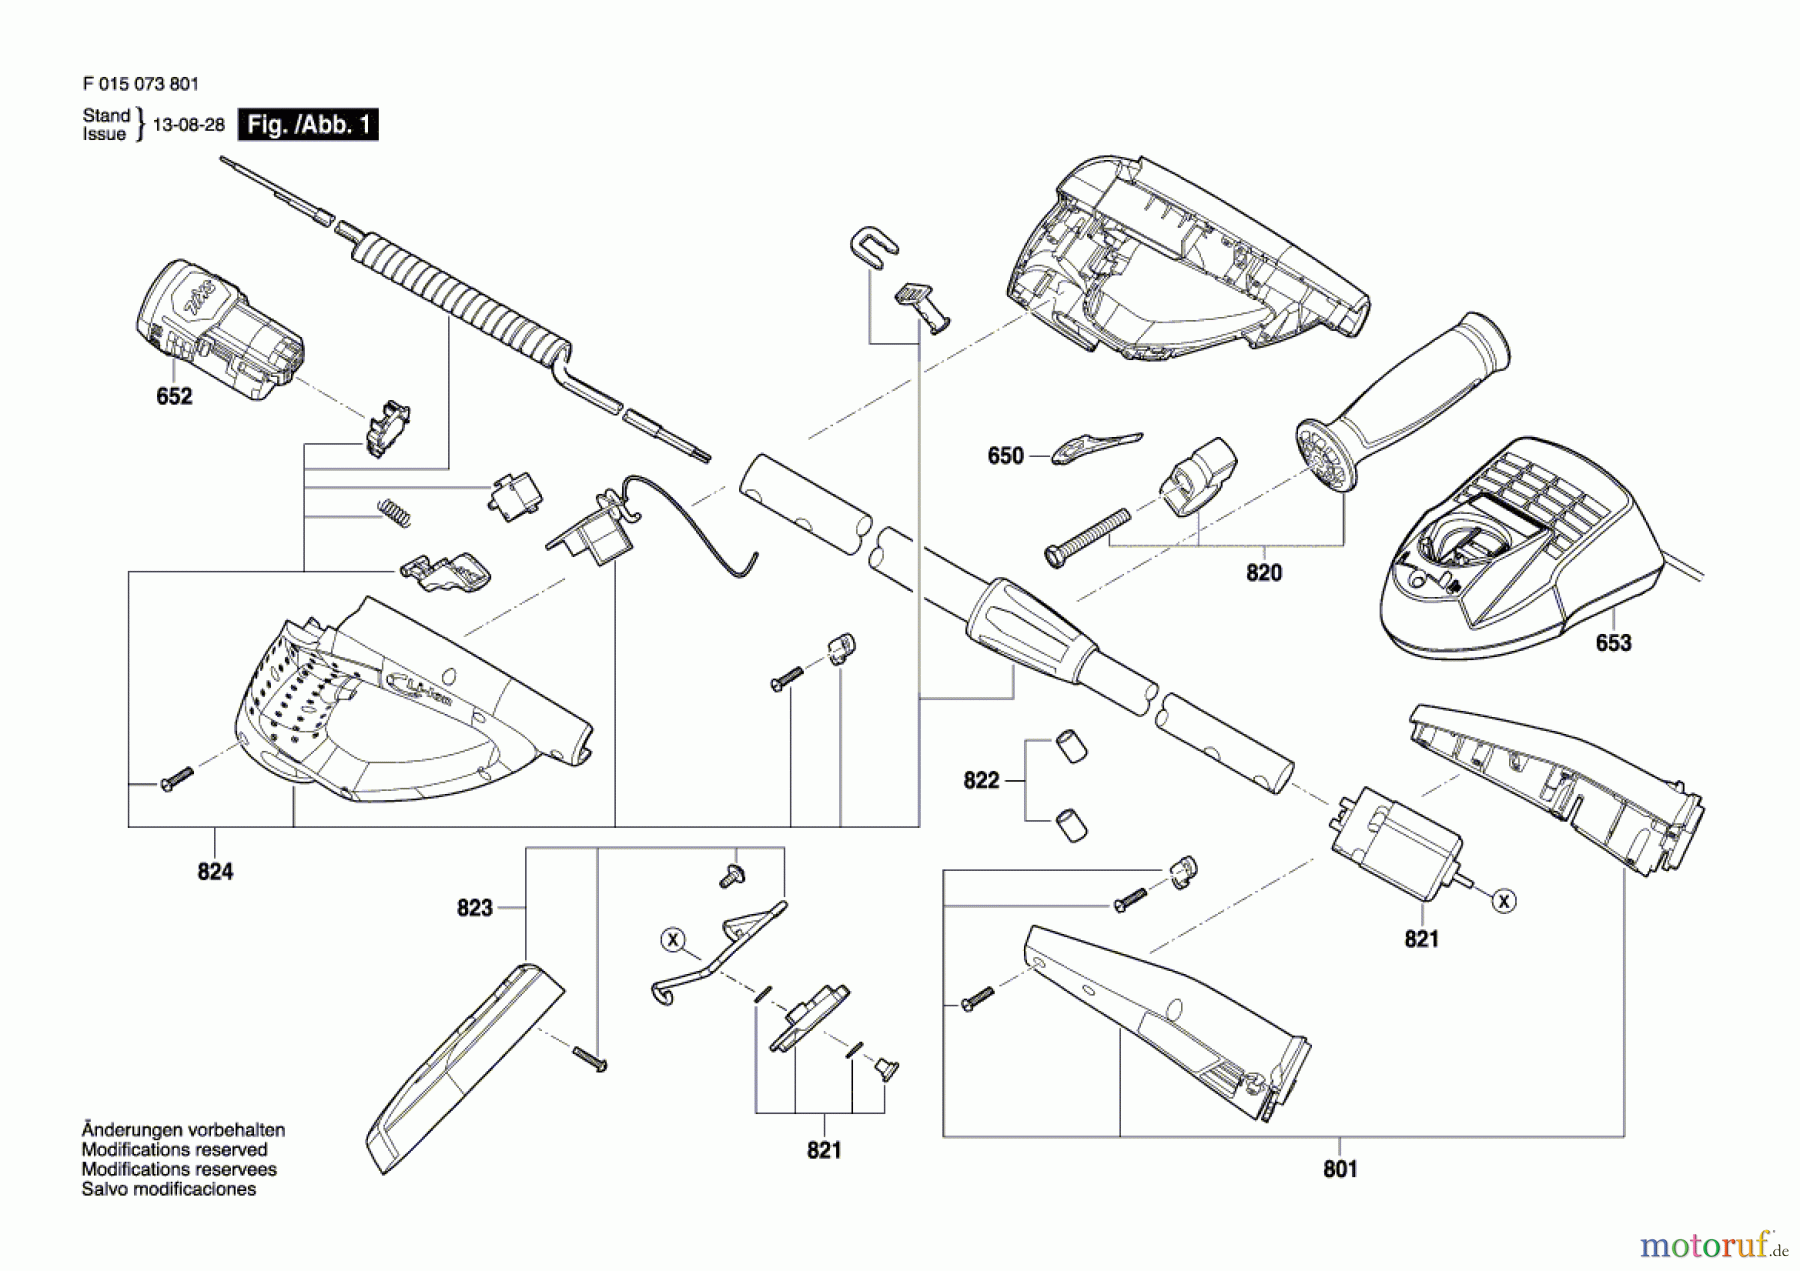  Bosch Werkzeug Combi-Set 0738 Seite 1